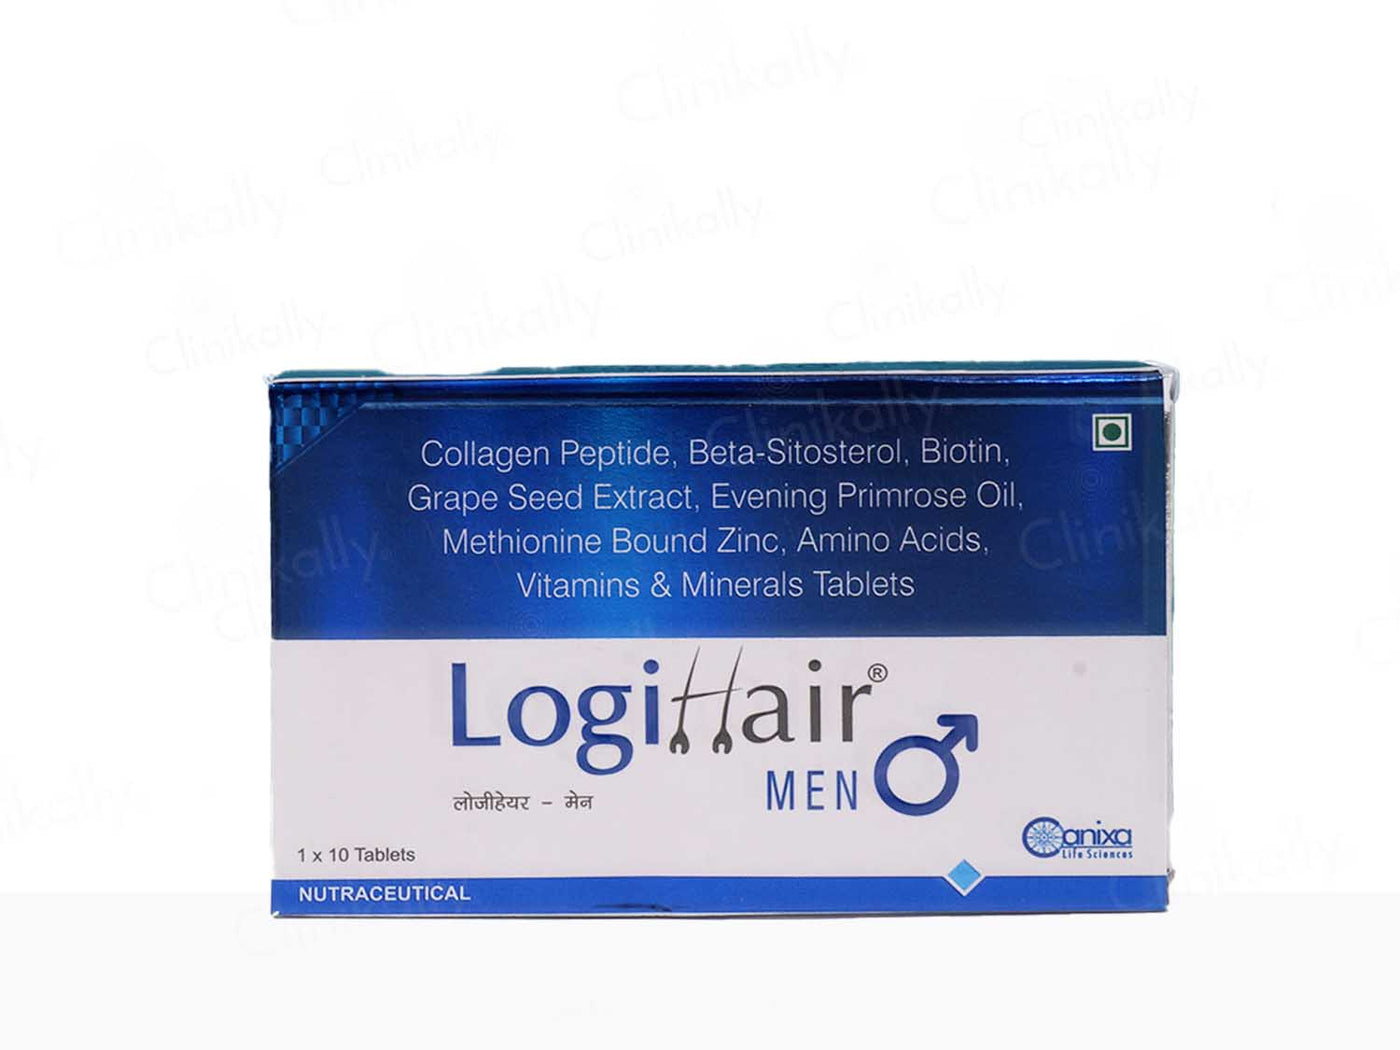 Logihair Men Tablets - Clinikally